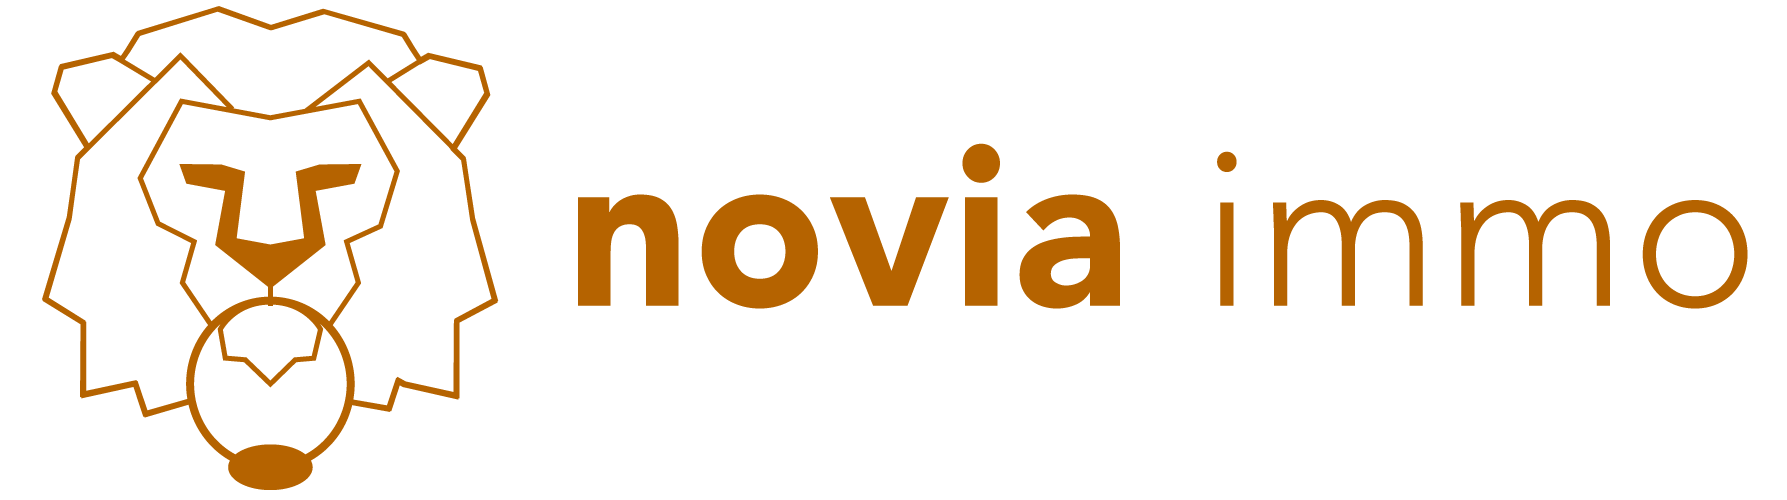 Novia immo Logo